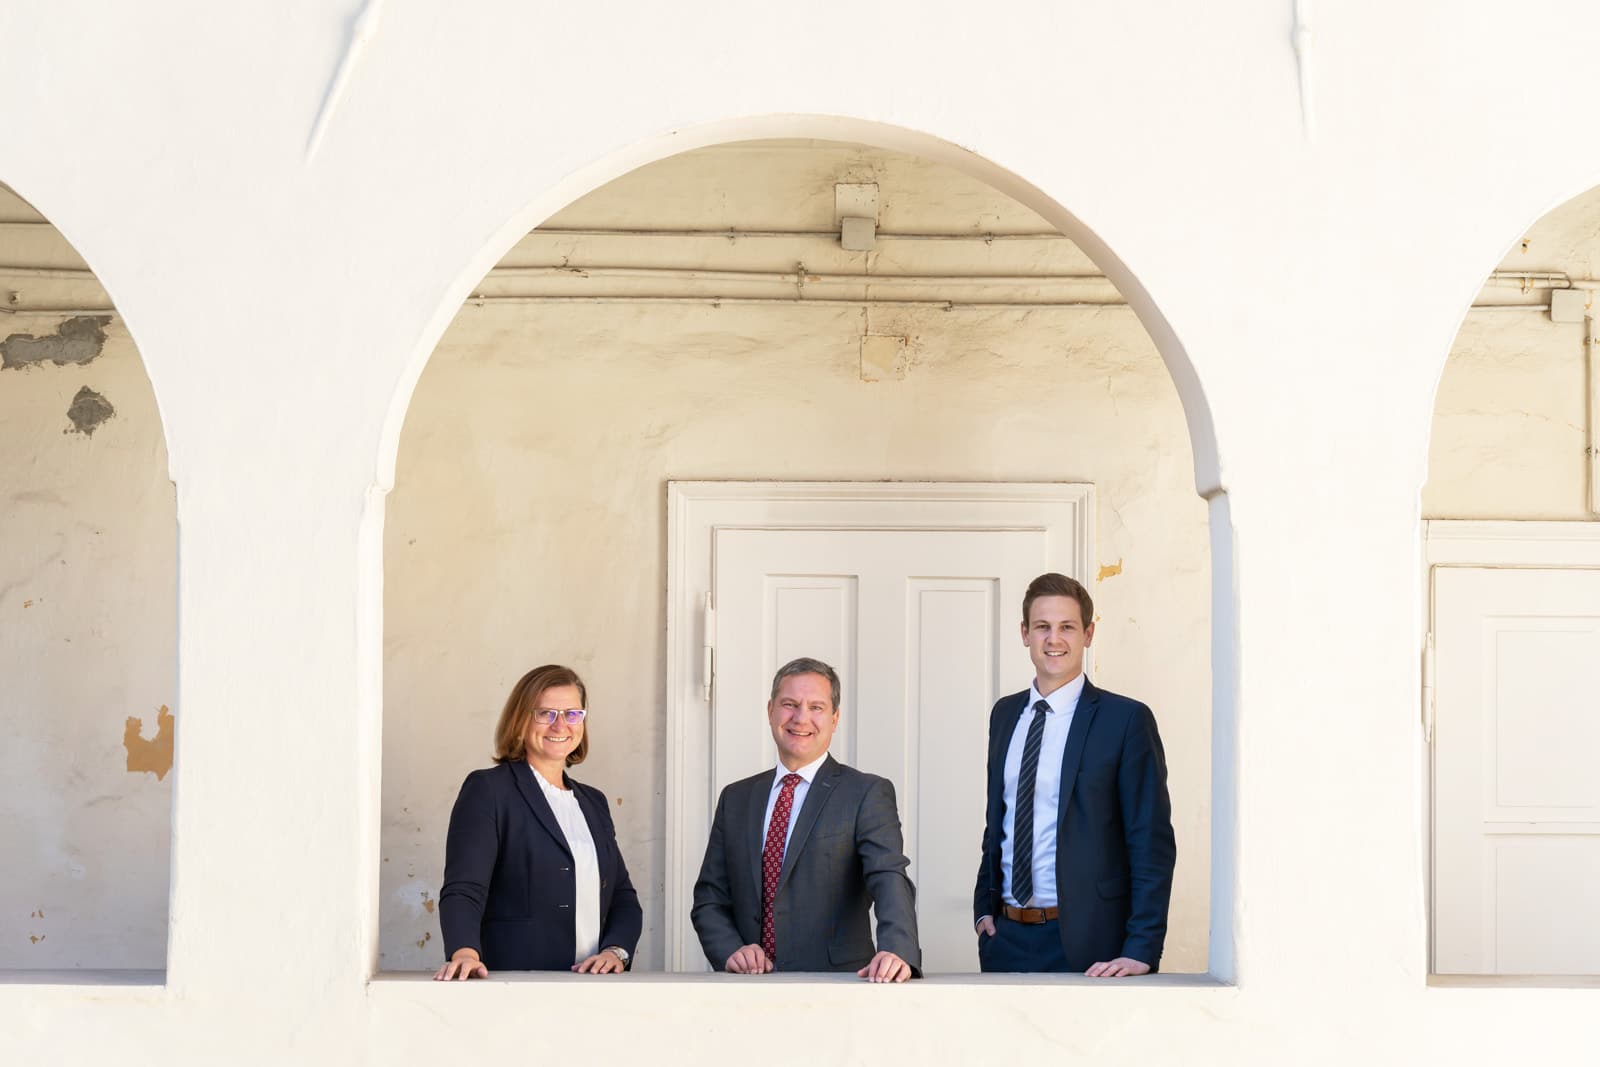 Teambild von den juristischen Teammitgliedern: Mag. Klaus Schöffmann Notar, Dr. Bettina Piber Notarsubstitutin, Mag. Hannes Plieschnegger Notarsubstitut